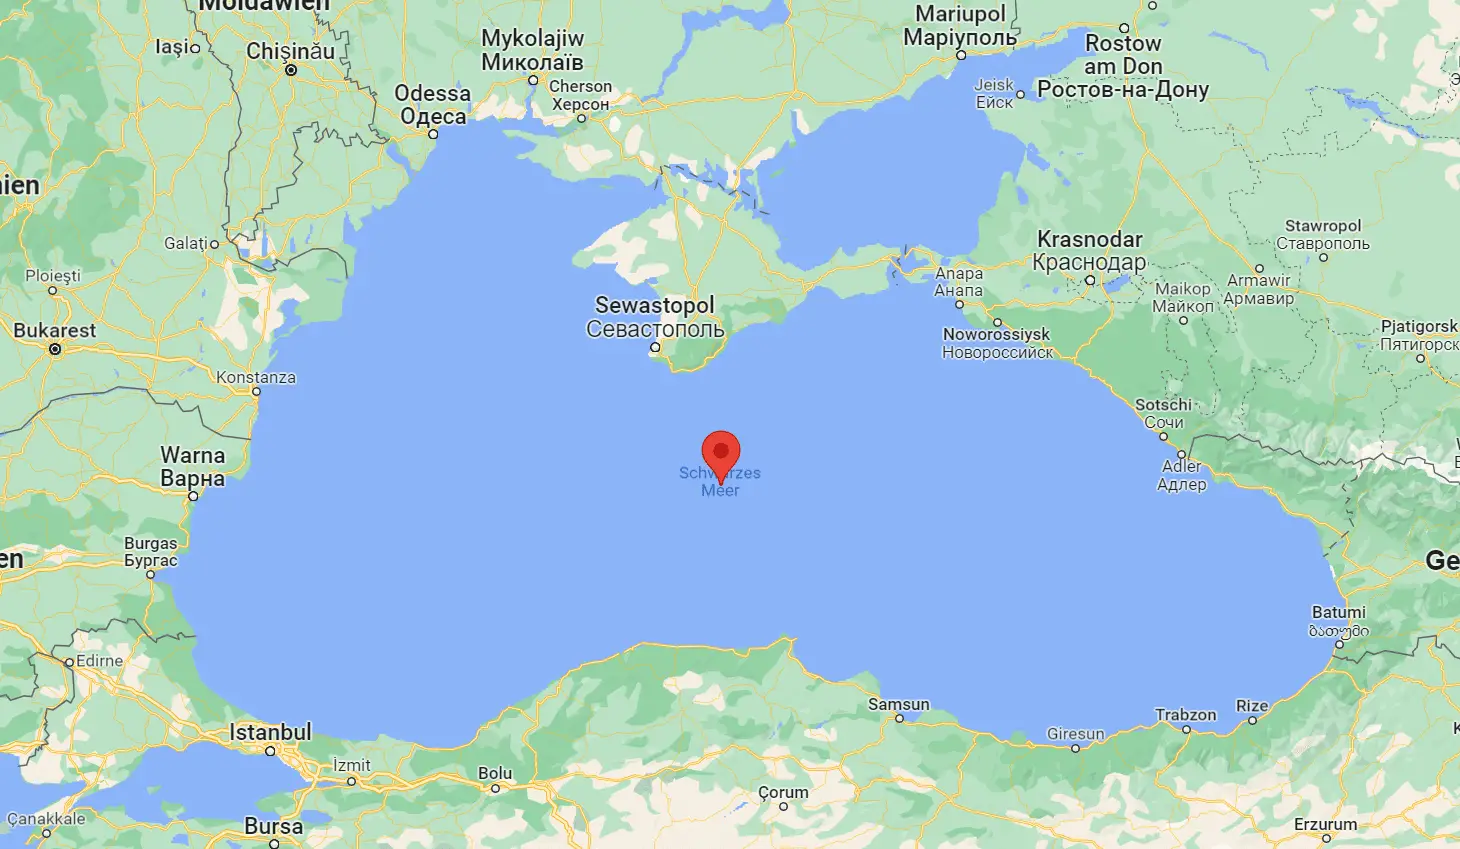 Das Schwarze Meer ist nur über eine sehr schmale Verbindung mit dem Mittelmeer verbunden